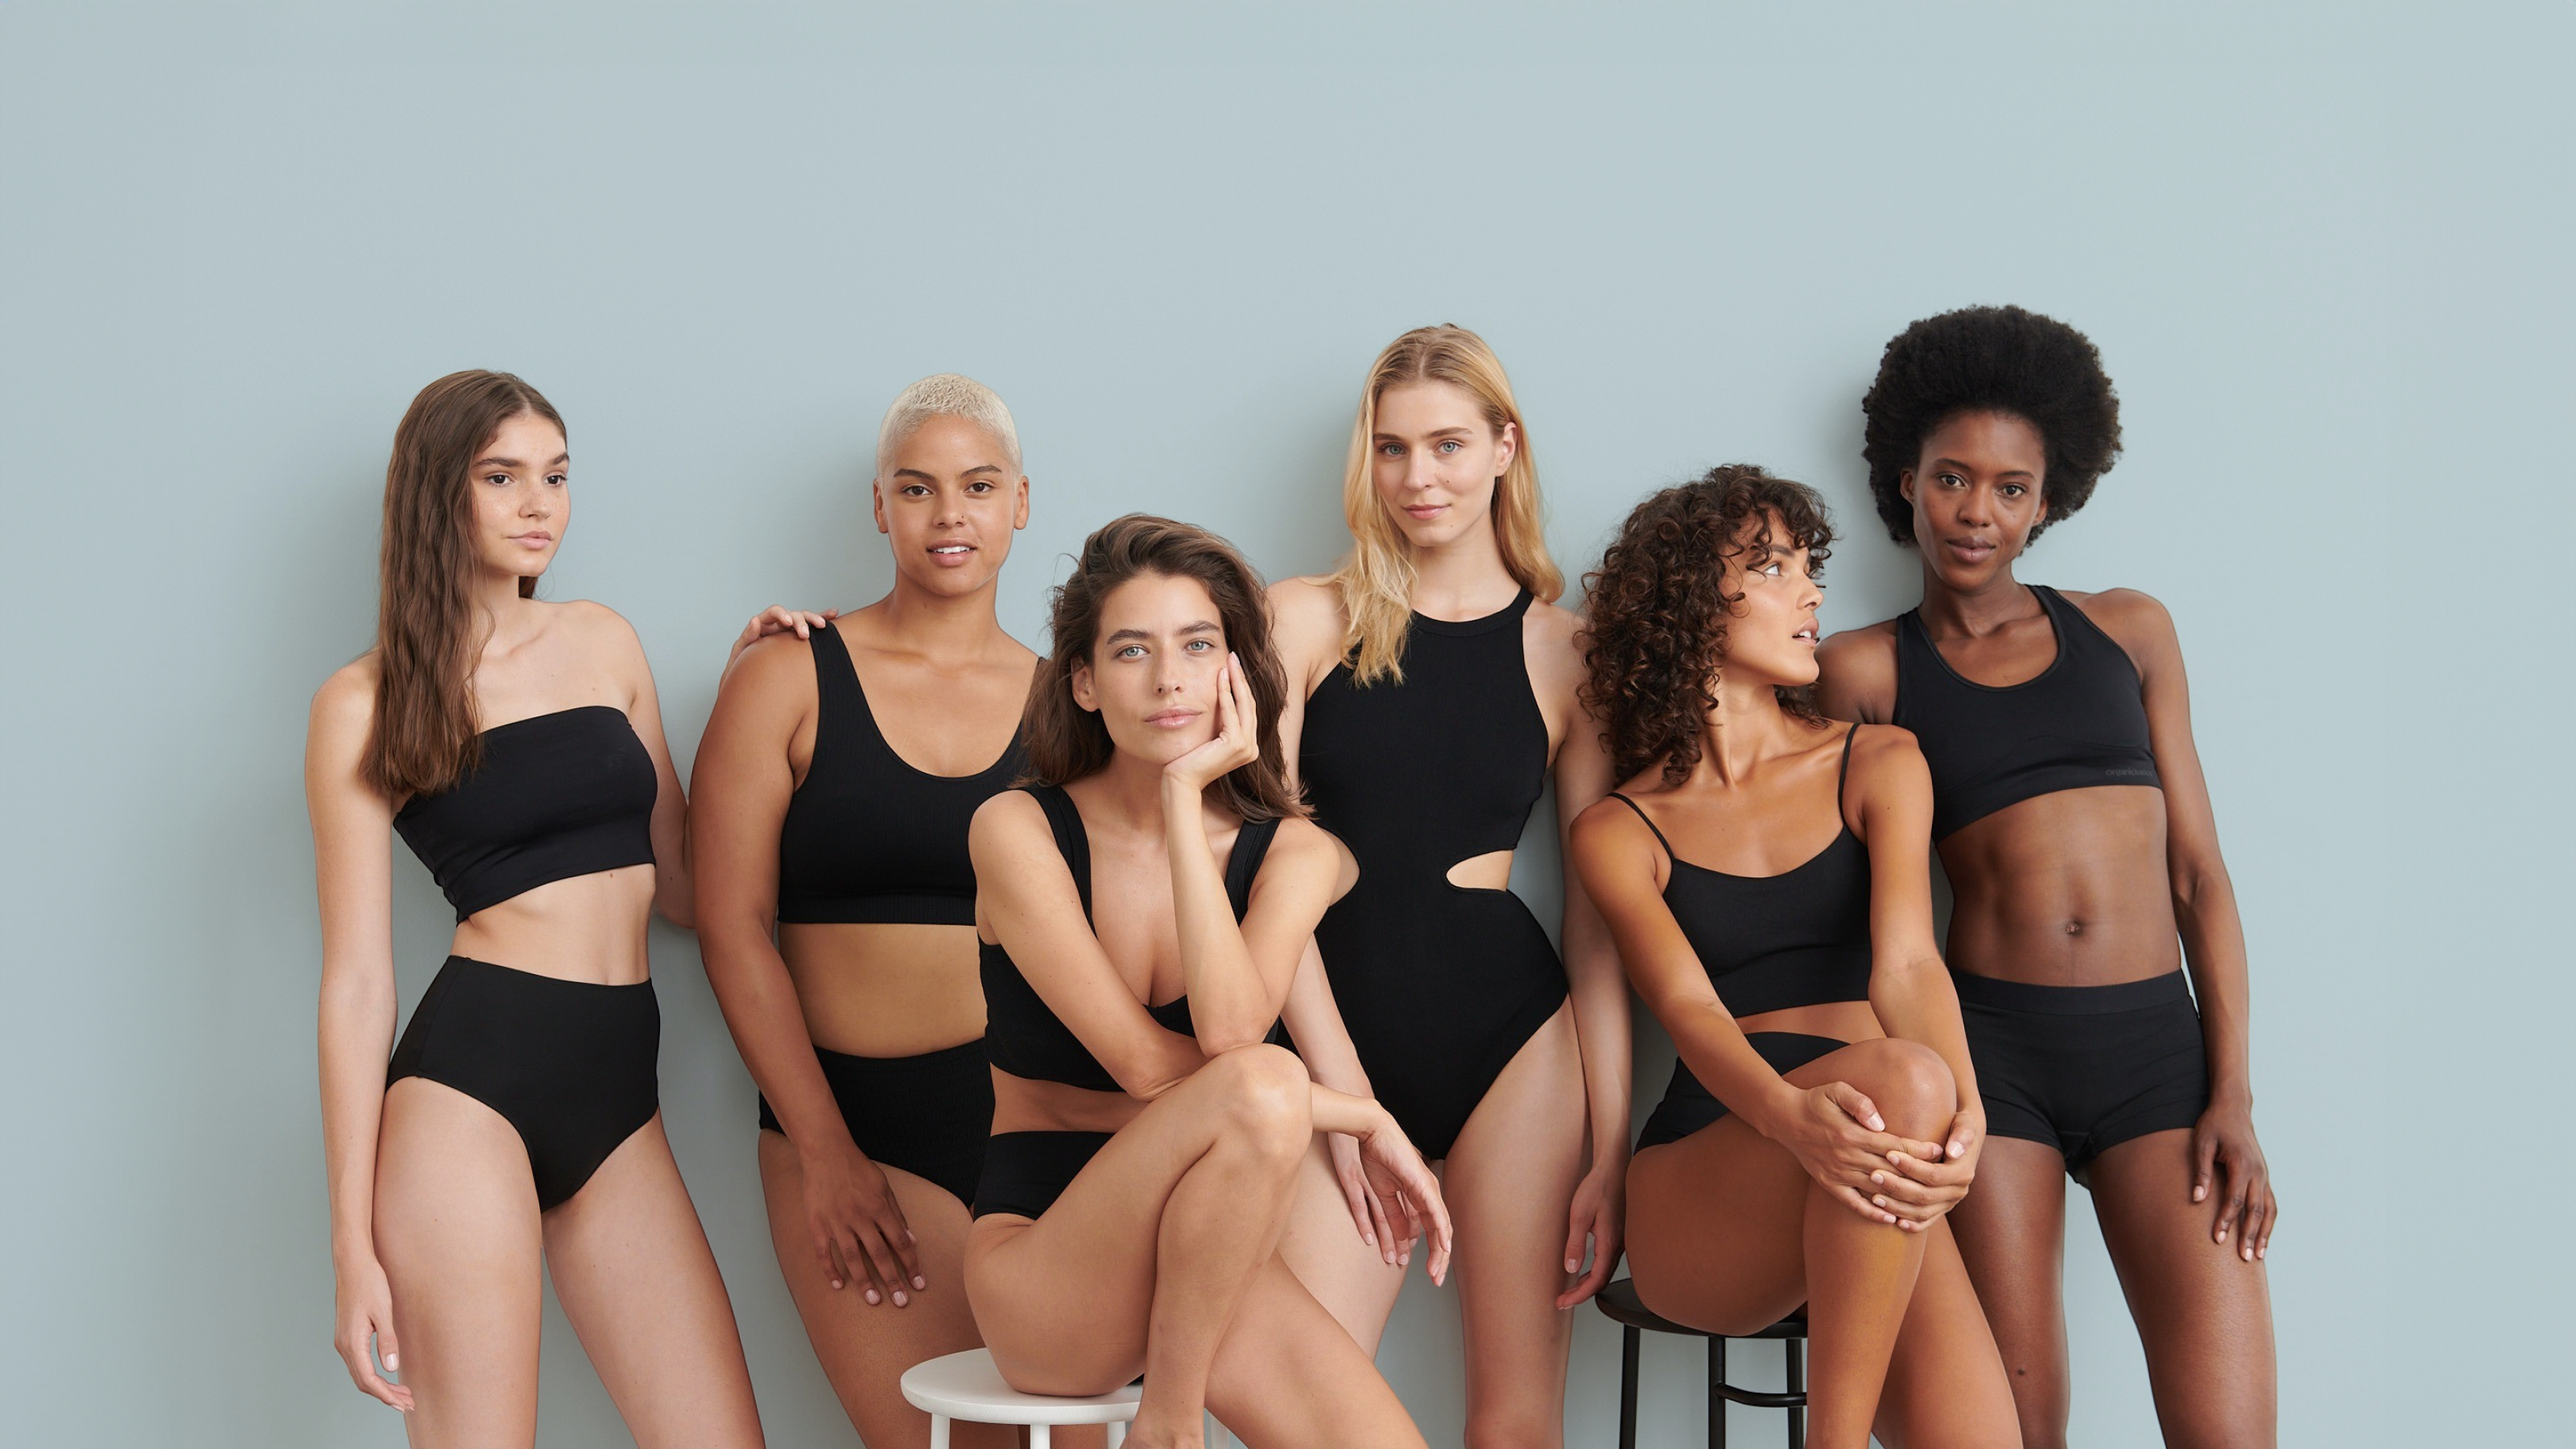 Grupo de seis mulheres sentadas e de pé com biquínis desportivos pretos.